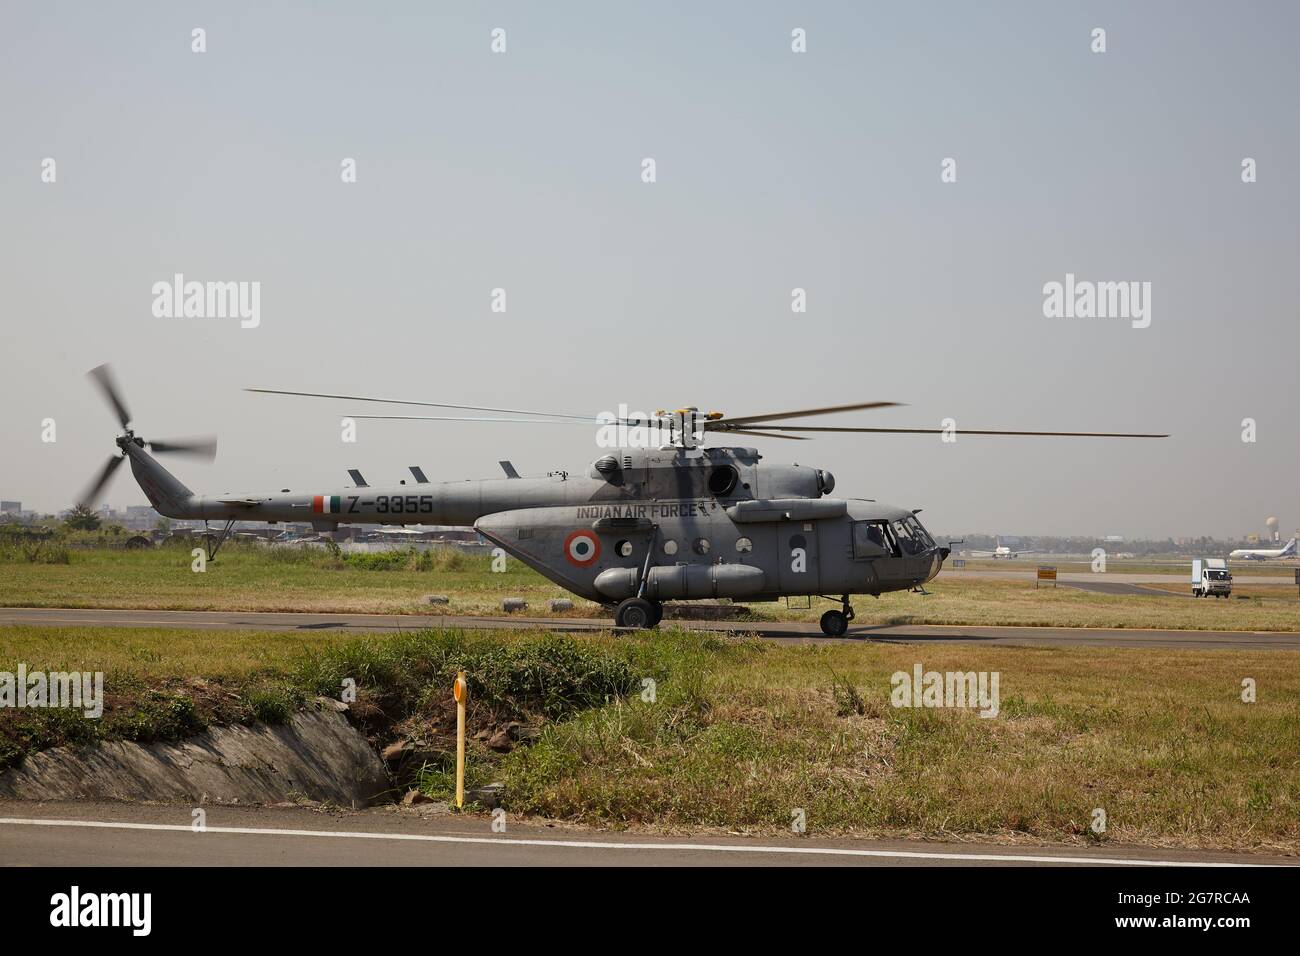 Helicóptero MIL MI-8, Unión Soviética, Rusia, Estación de la Fuerza Aérea Yelahanka, Campo Aéreo de la Fuerza Aérea India, Yelahanka, Bengaluru, Bangalore, Karnataka, India, Asia, India, Asia Foto de stock